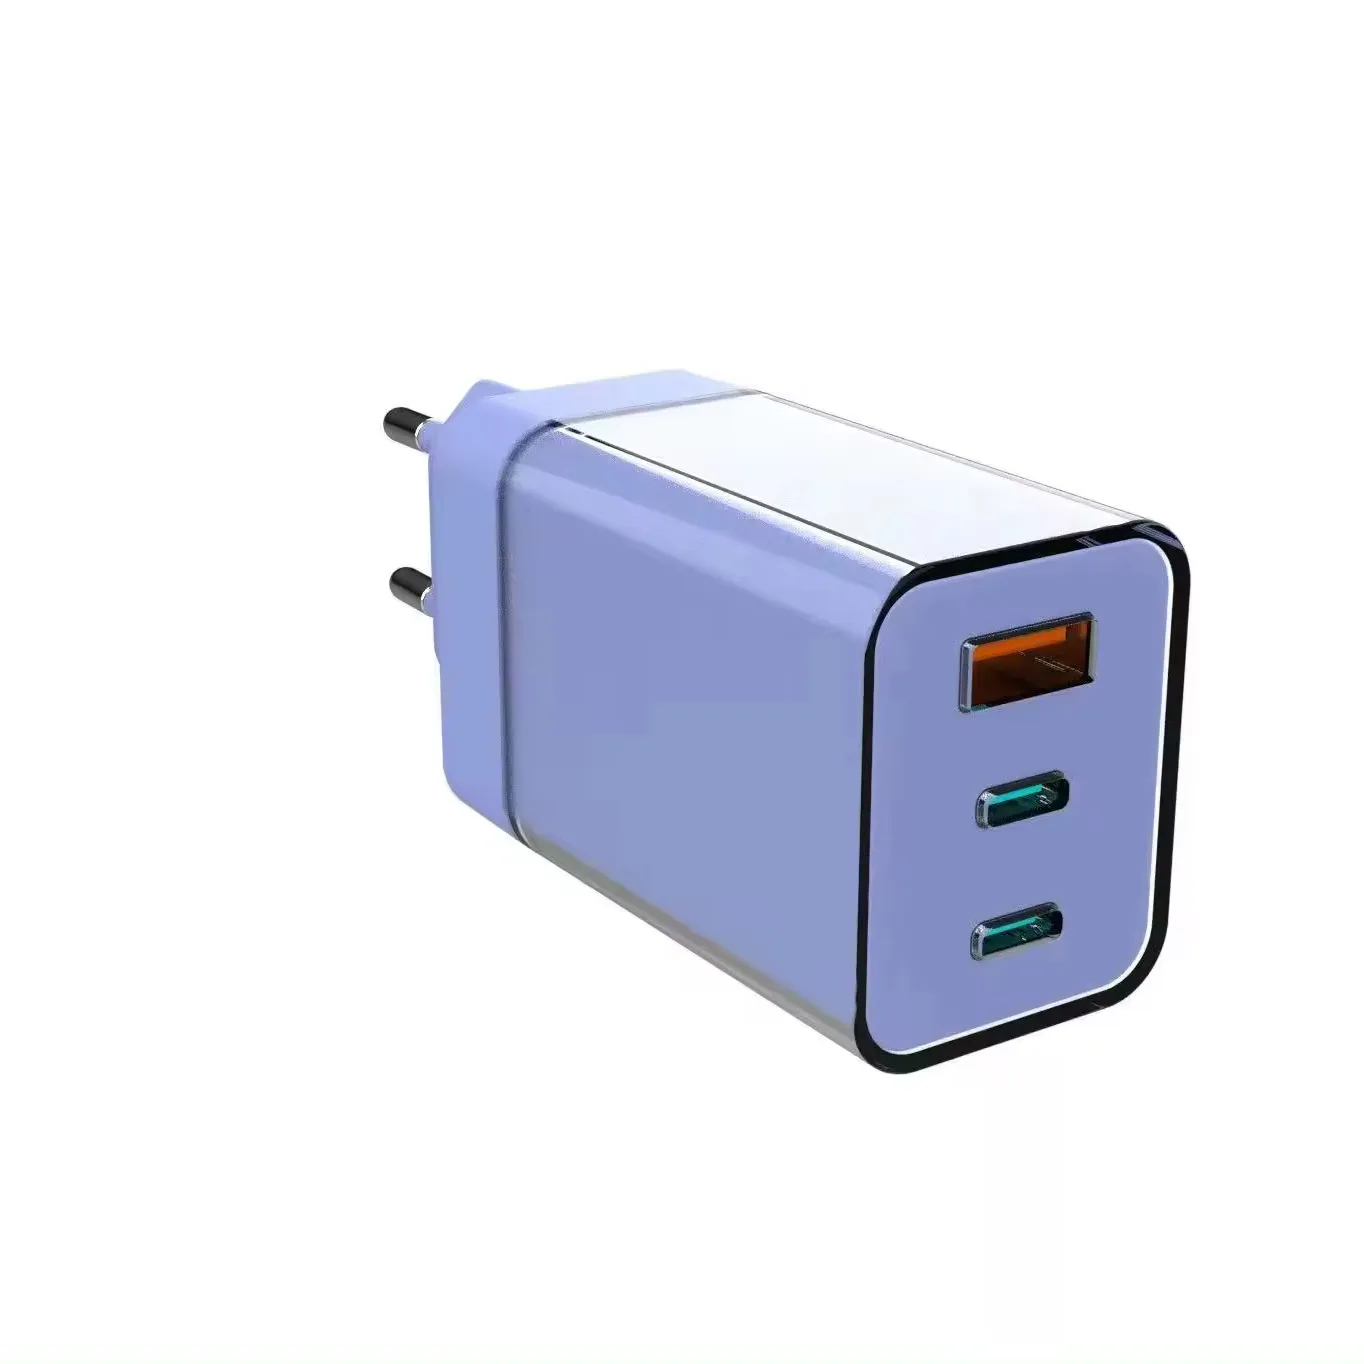 Um Carregador para todos: Carregador de parede USB-A e USB-C duplo USB-C de 65 W para carregamento de vários dispositivos NOVA solução